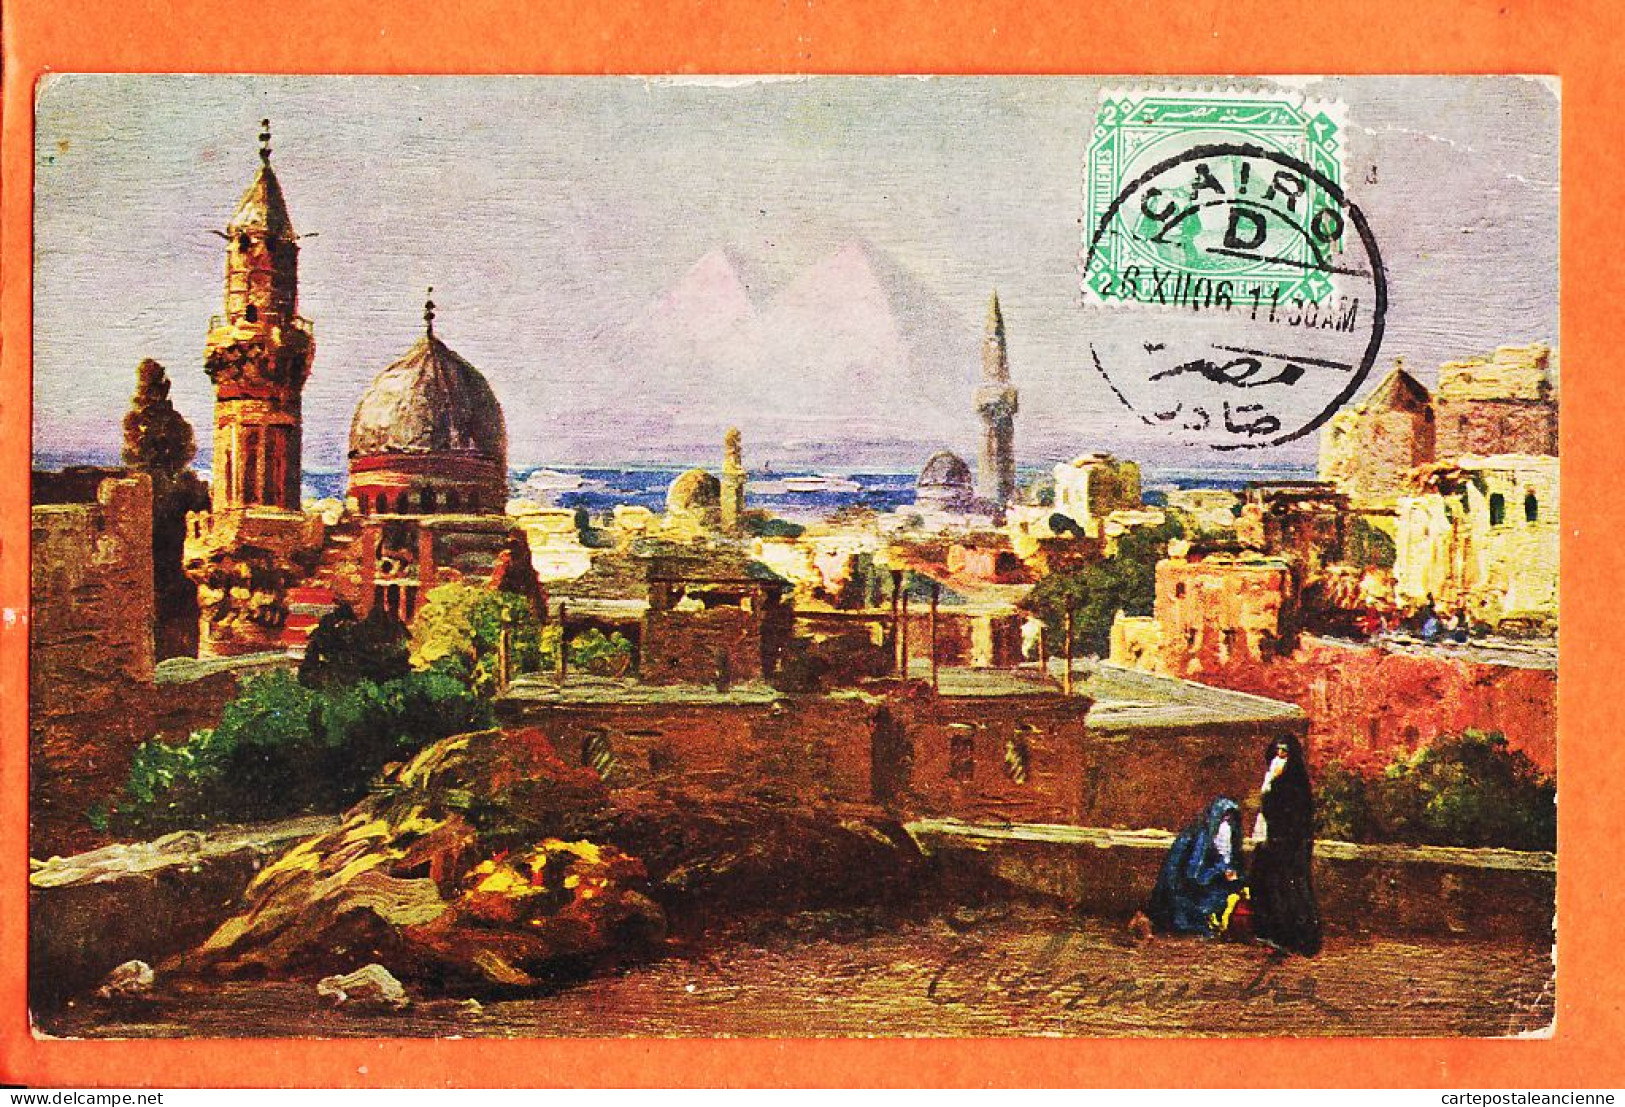 09951 / ⭐ LE CAIRE Egypte ◉ CAIRO KAIRO 1906 à PENTECOUTEAU Rue Longchamp Paris ◉ Illust. WUTTKE ? ◉ Lithographie R-131 - Le Caire